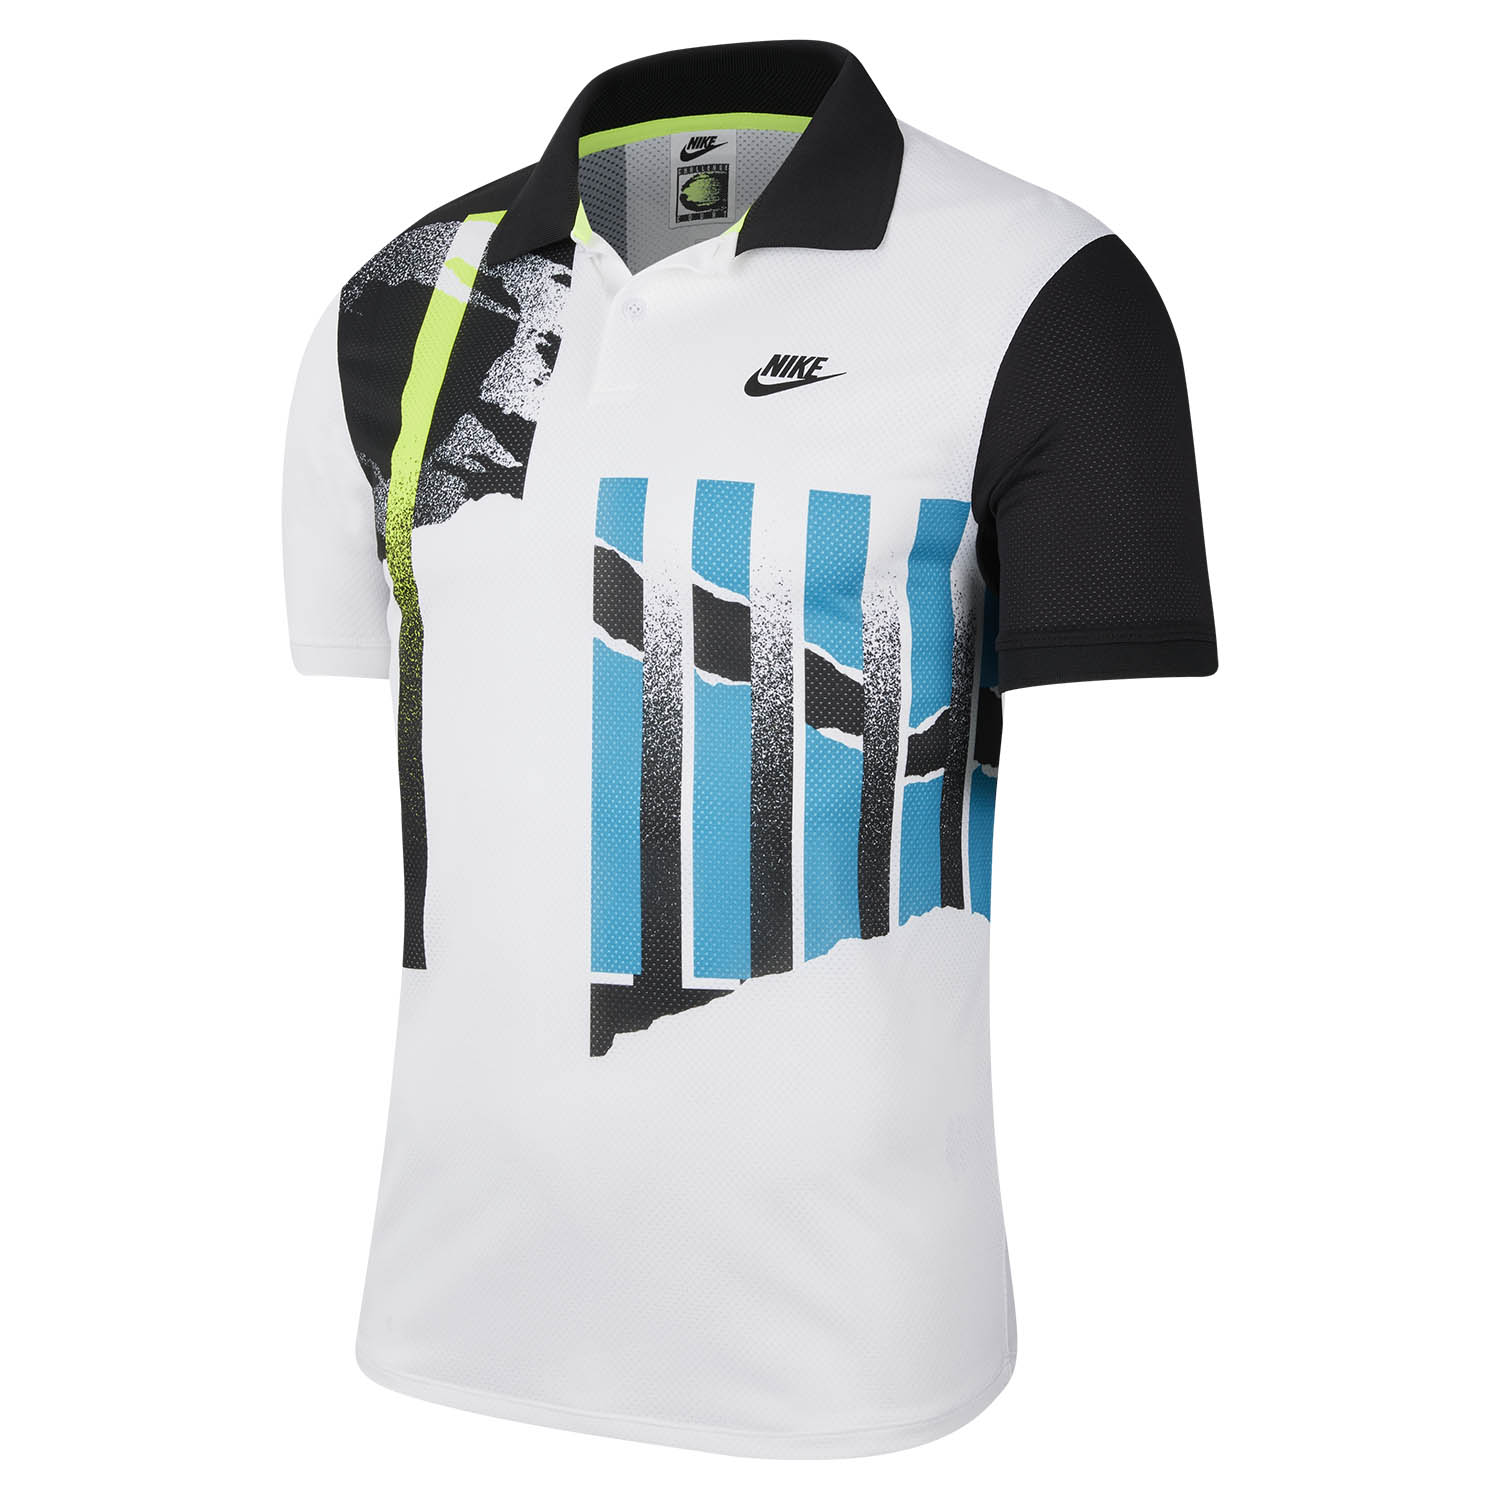 Nike Advantage Men's Tennis Polo - White/Black/Neo Teal/Black